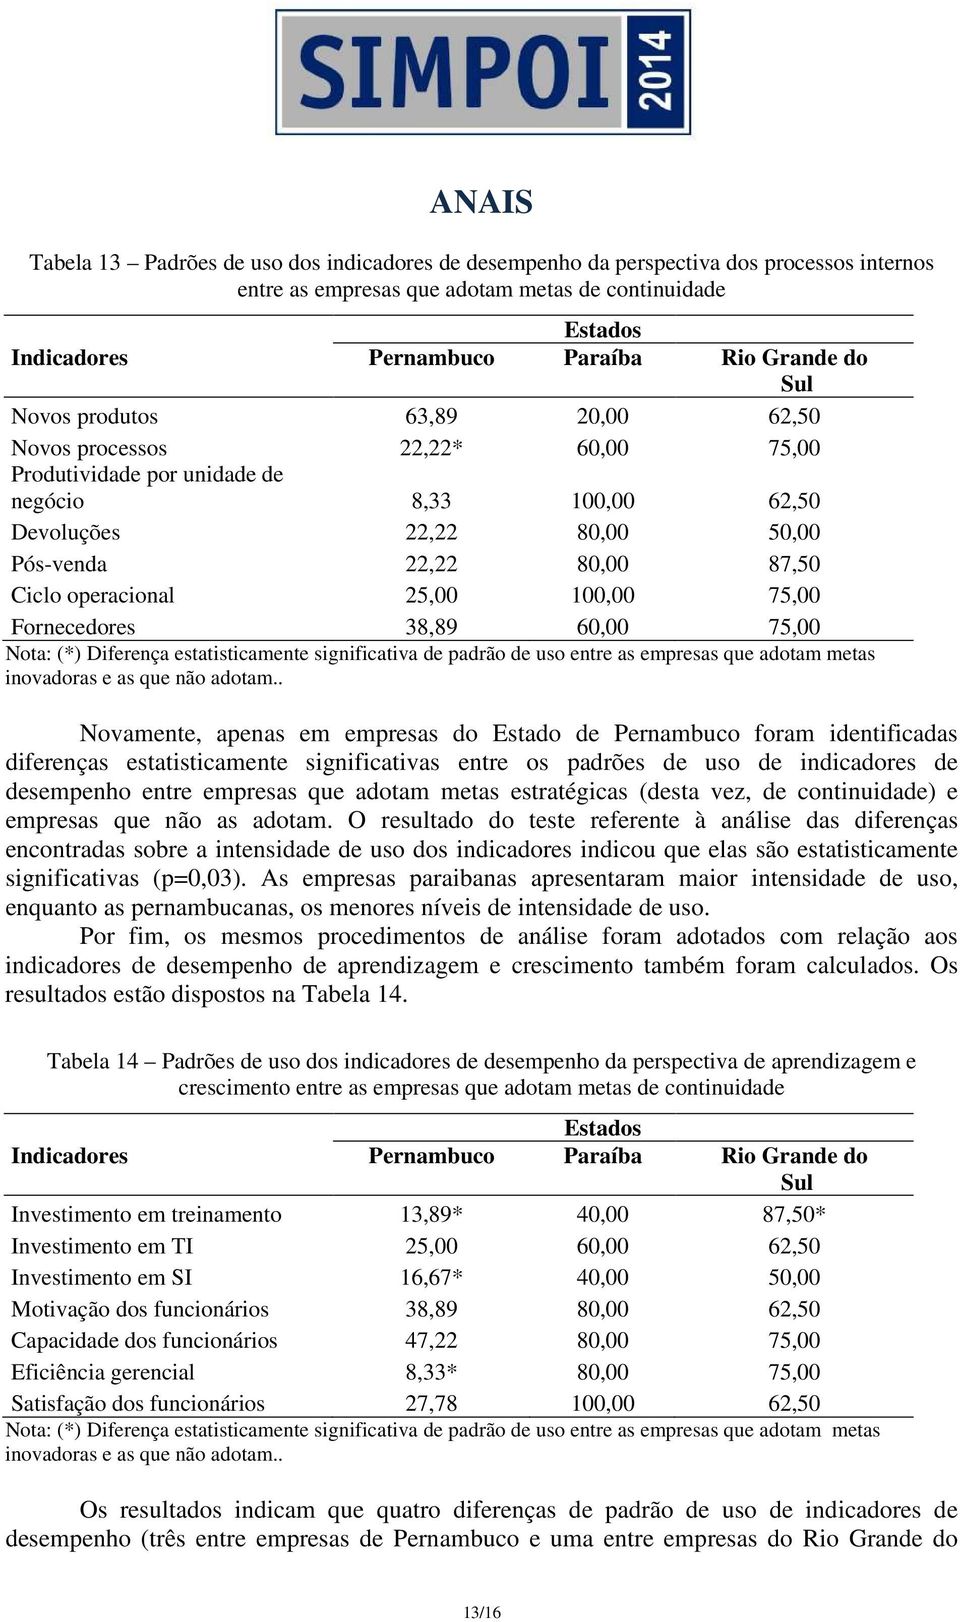 Novamente, apenas em empresas do Estado de Pernambuco foram identificadas diferenças estatisticamente significativas entre os padrões de uso de indicadores de desempenho entre empresas que adotam